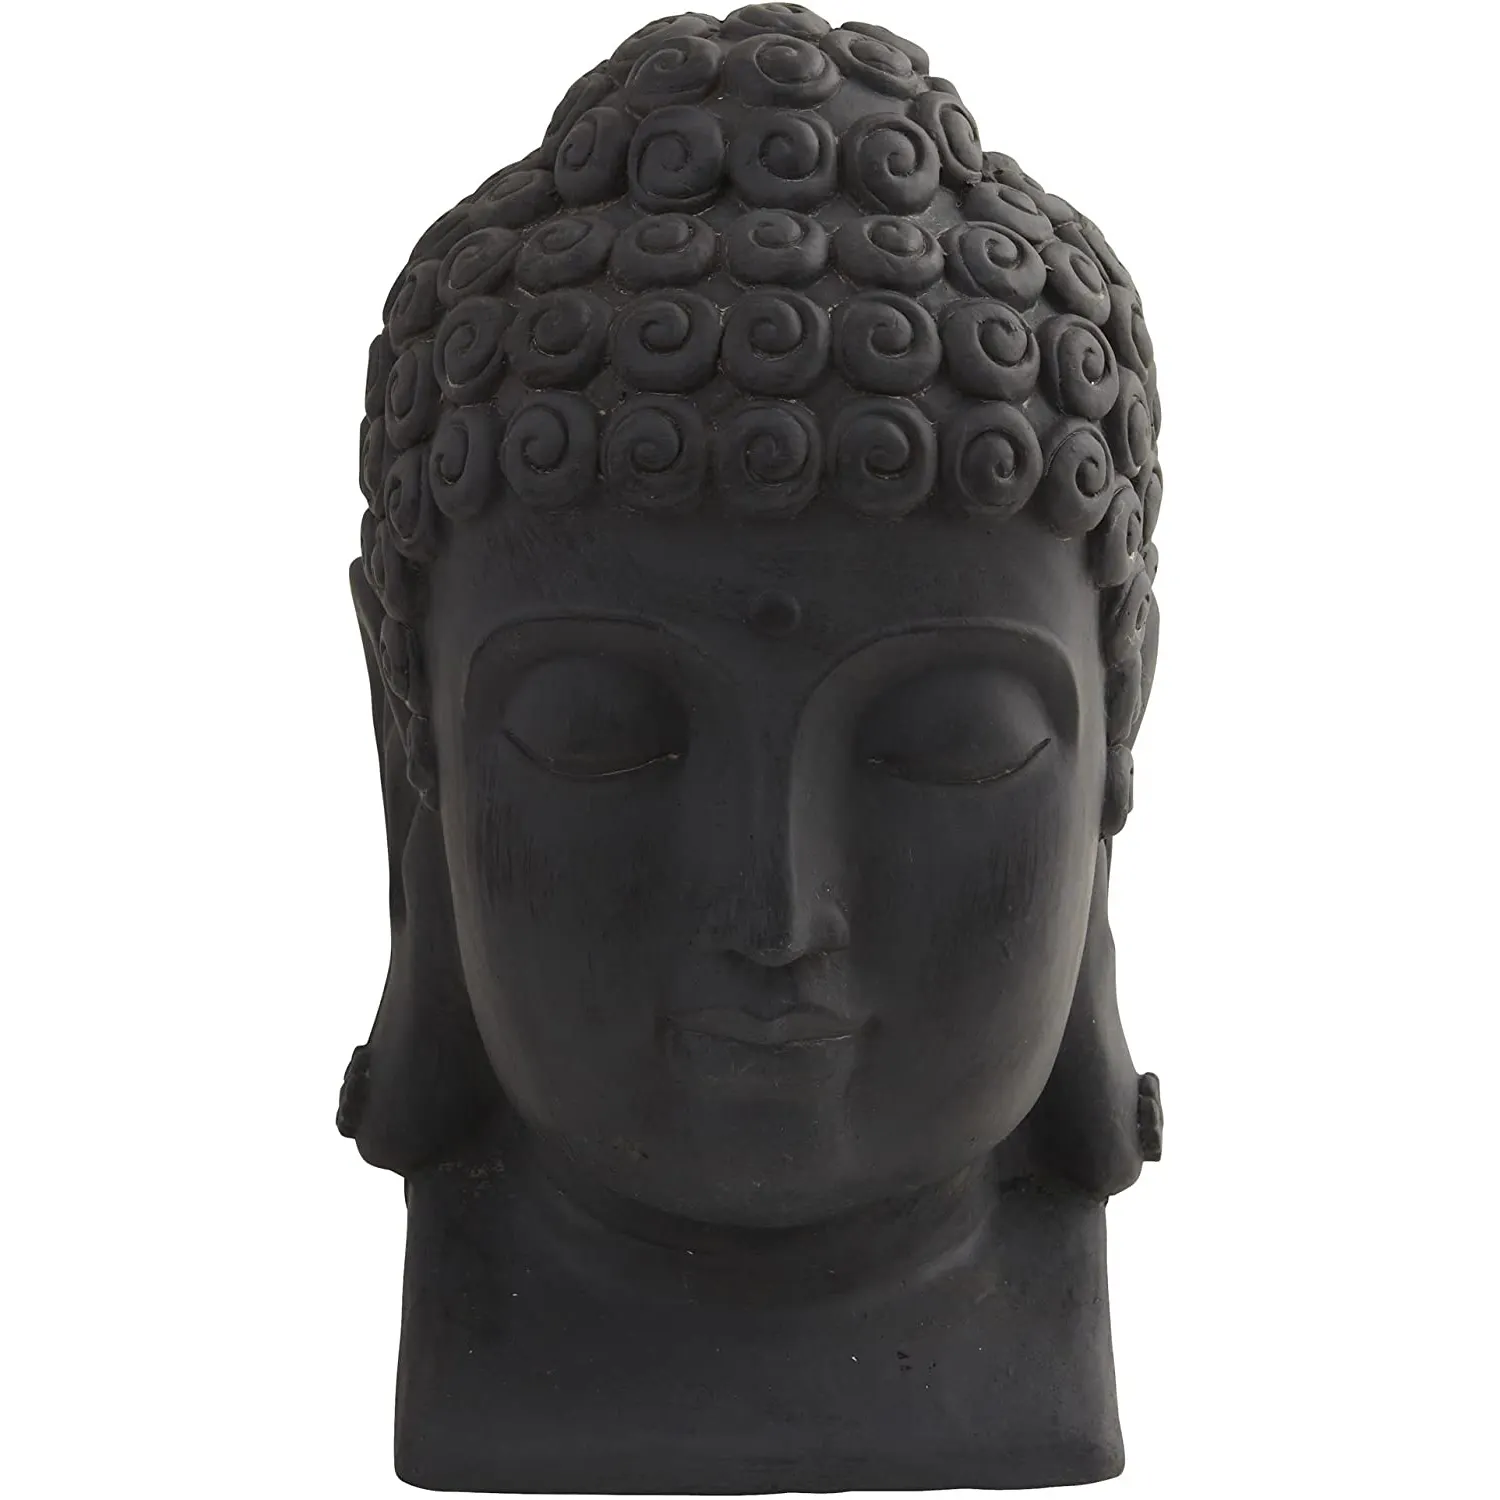 Buda kafa figürleri şanslı buda heykeli reçine heykel için uygun dini ve ev dekor